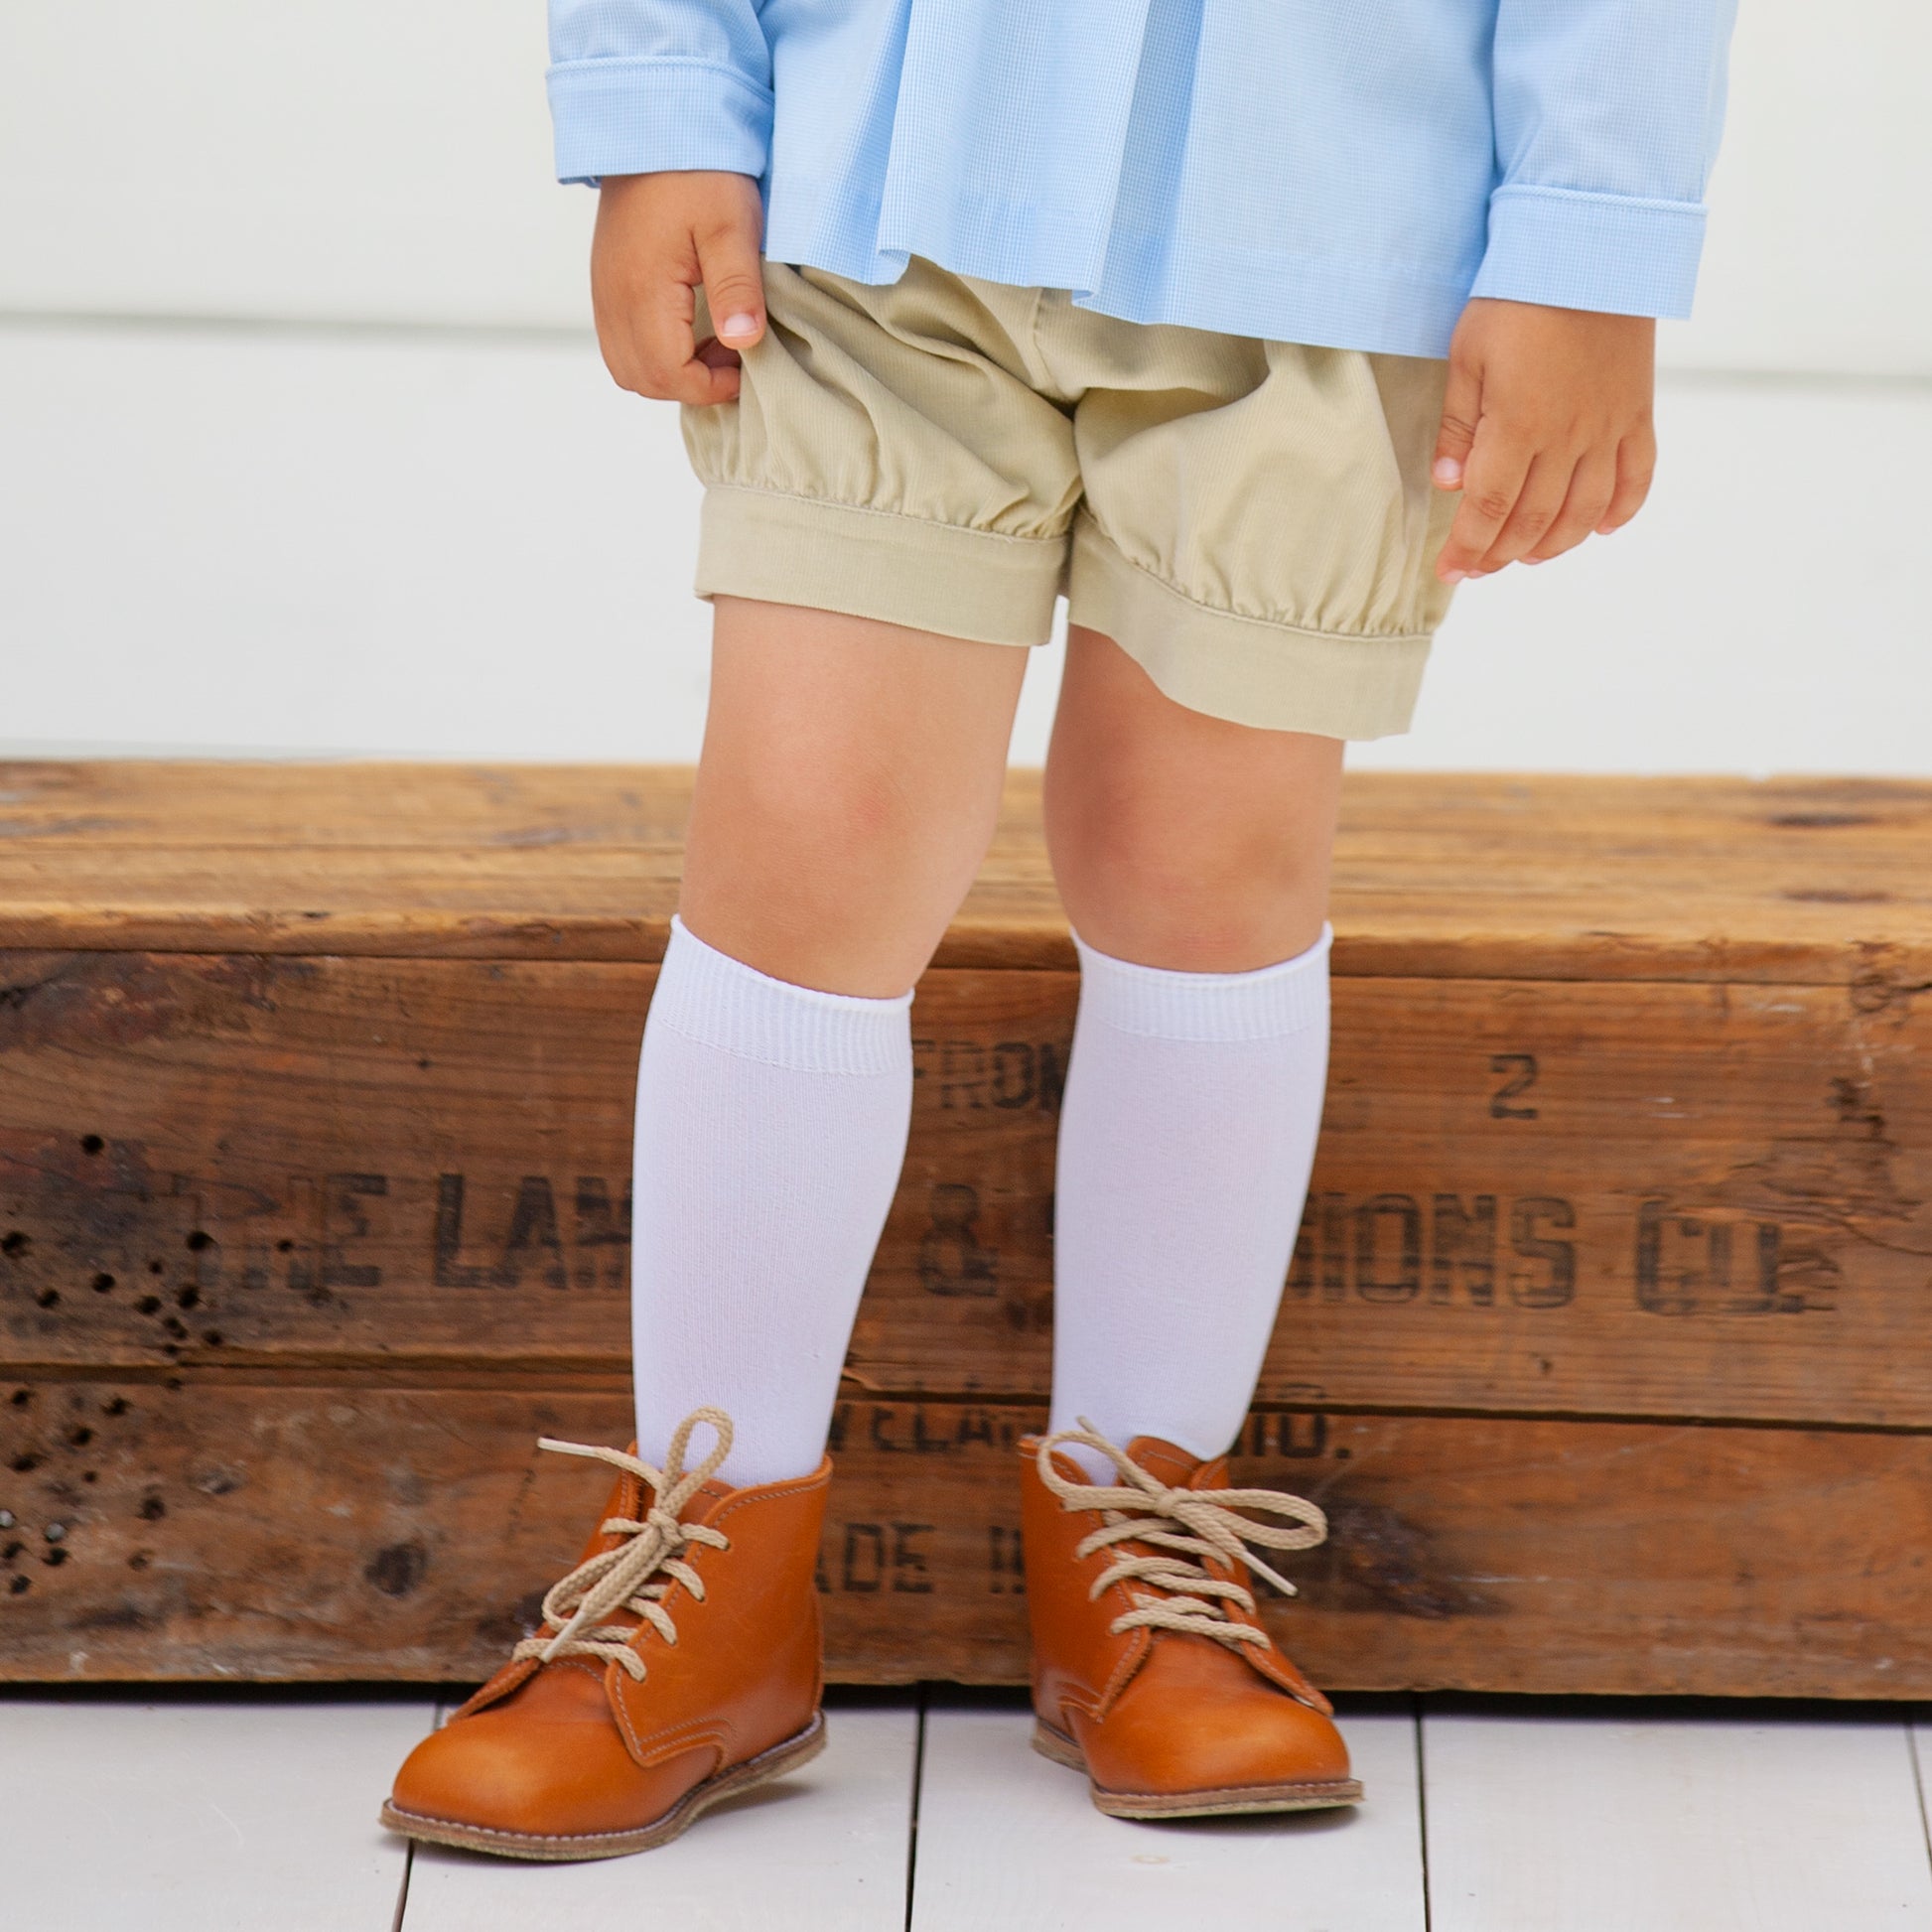 Monogrammed Boys Dress Socks